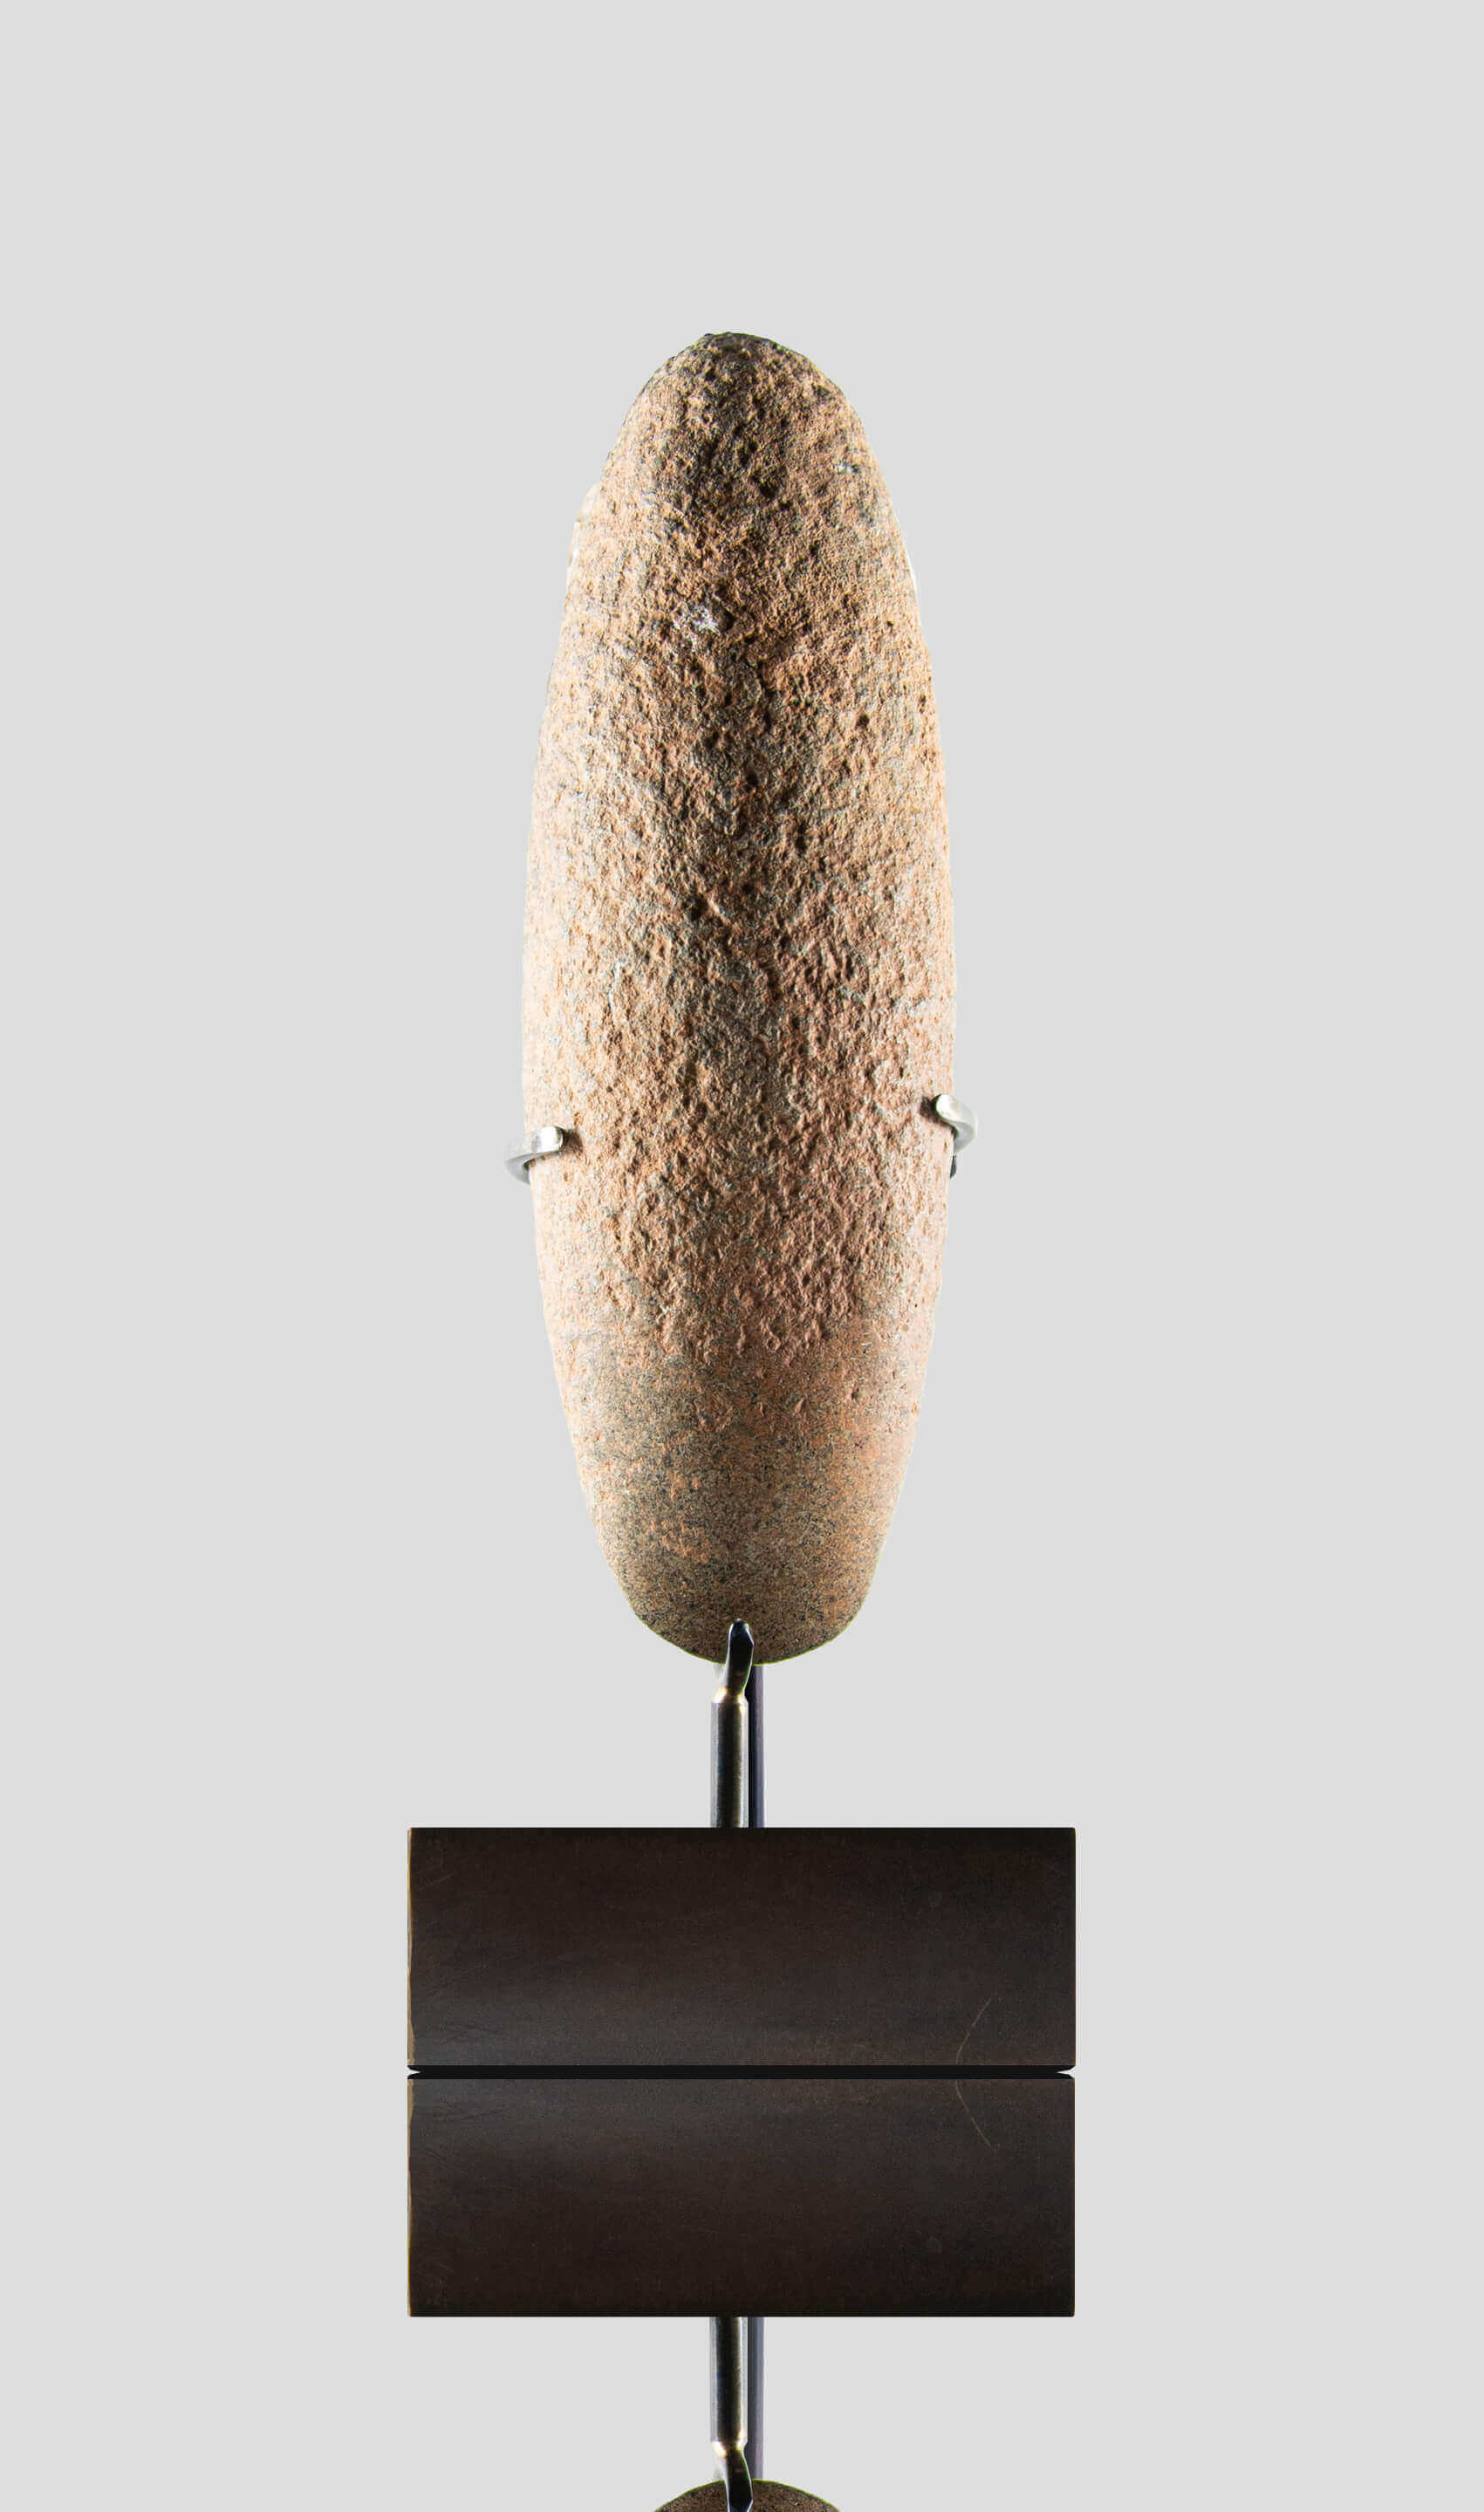 アーティファクト 新石器時代 カプシアン 手斧 [紀元前 8,500 年] 220mm